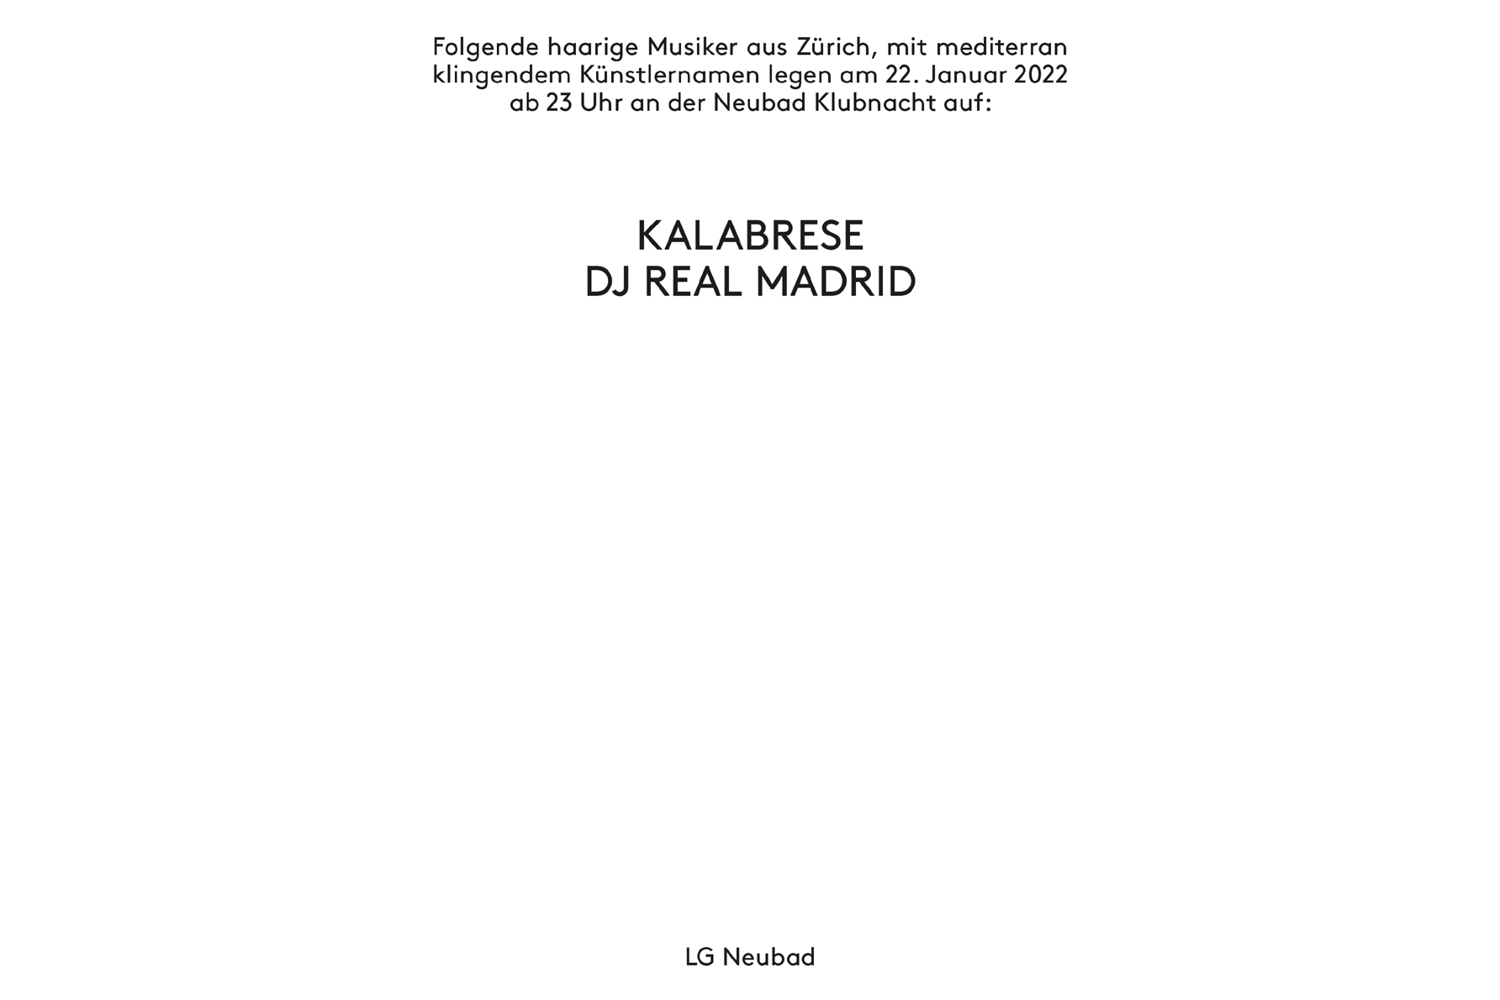 Humorvolles Plakat für die Klubnacht mit Kalabrese und DJ Real Madrid.